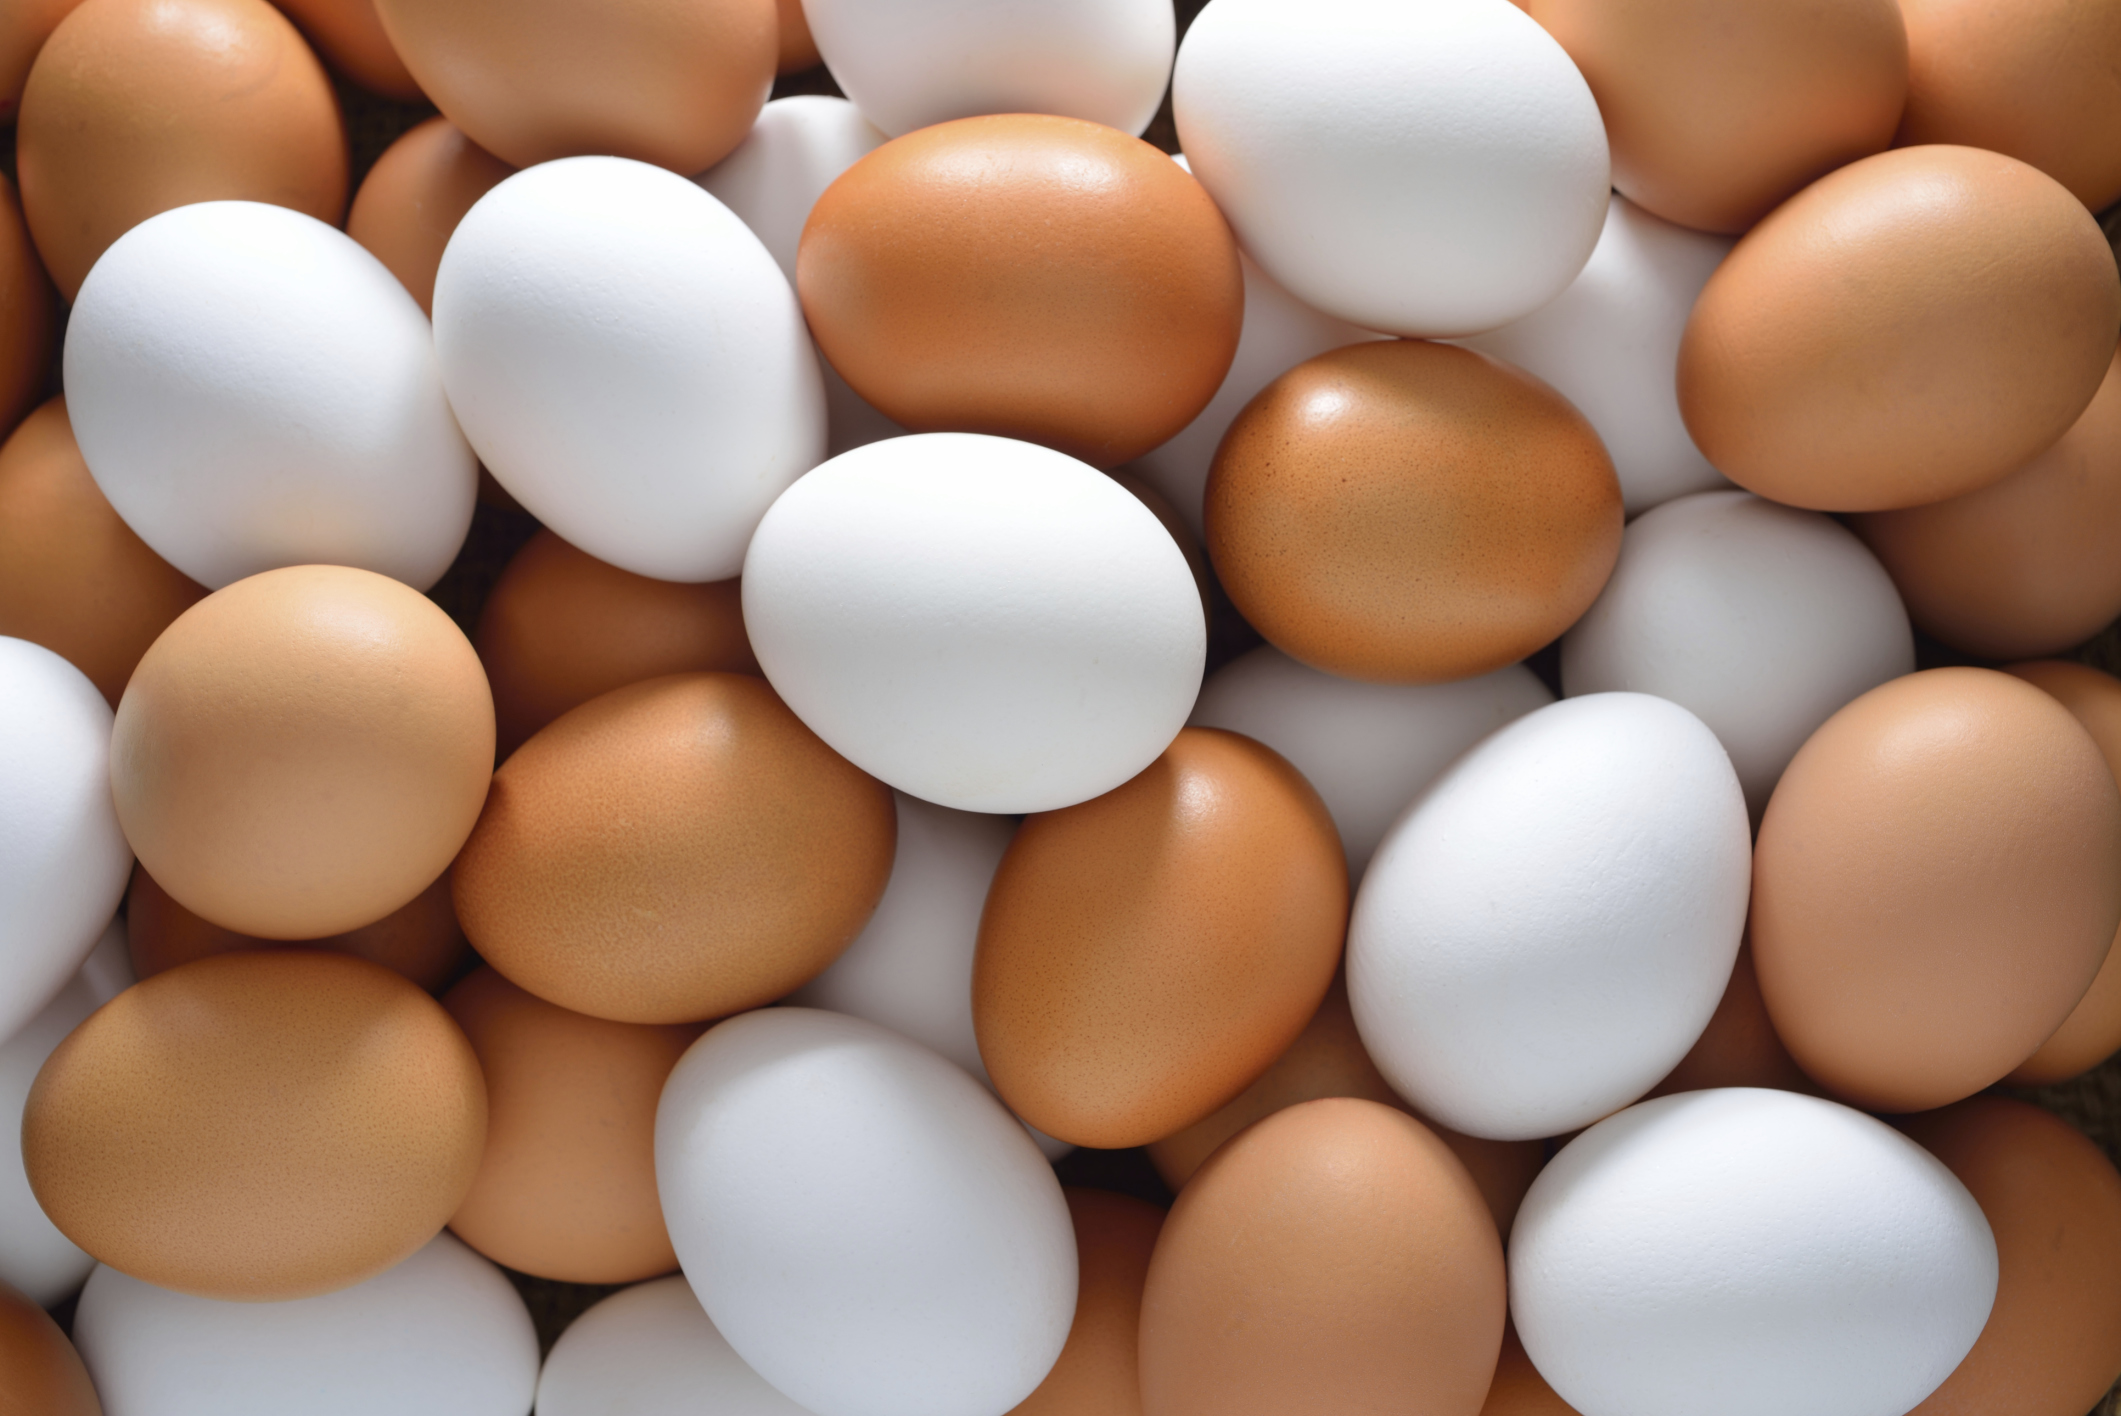 अंडे खाने से कम होता है हार्ट स्ट्रोक्स के चांसेस अंडा खाना यूं तो सेहत के लिए फायदेमंद माना जाता है लेकिन अंडा खाने का ये फायदा शायद ही आपने पहले कभी सुना हो.